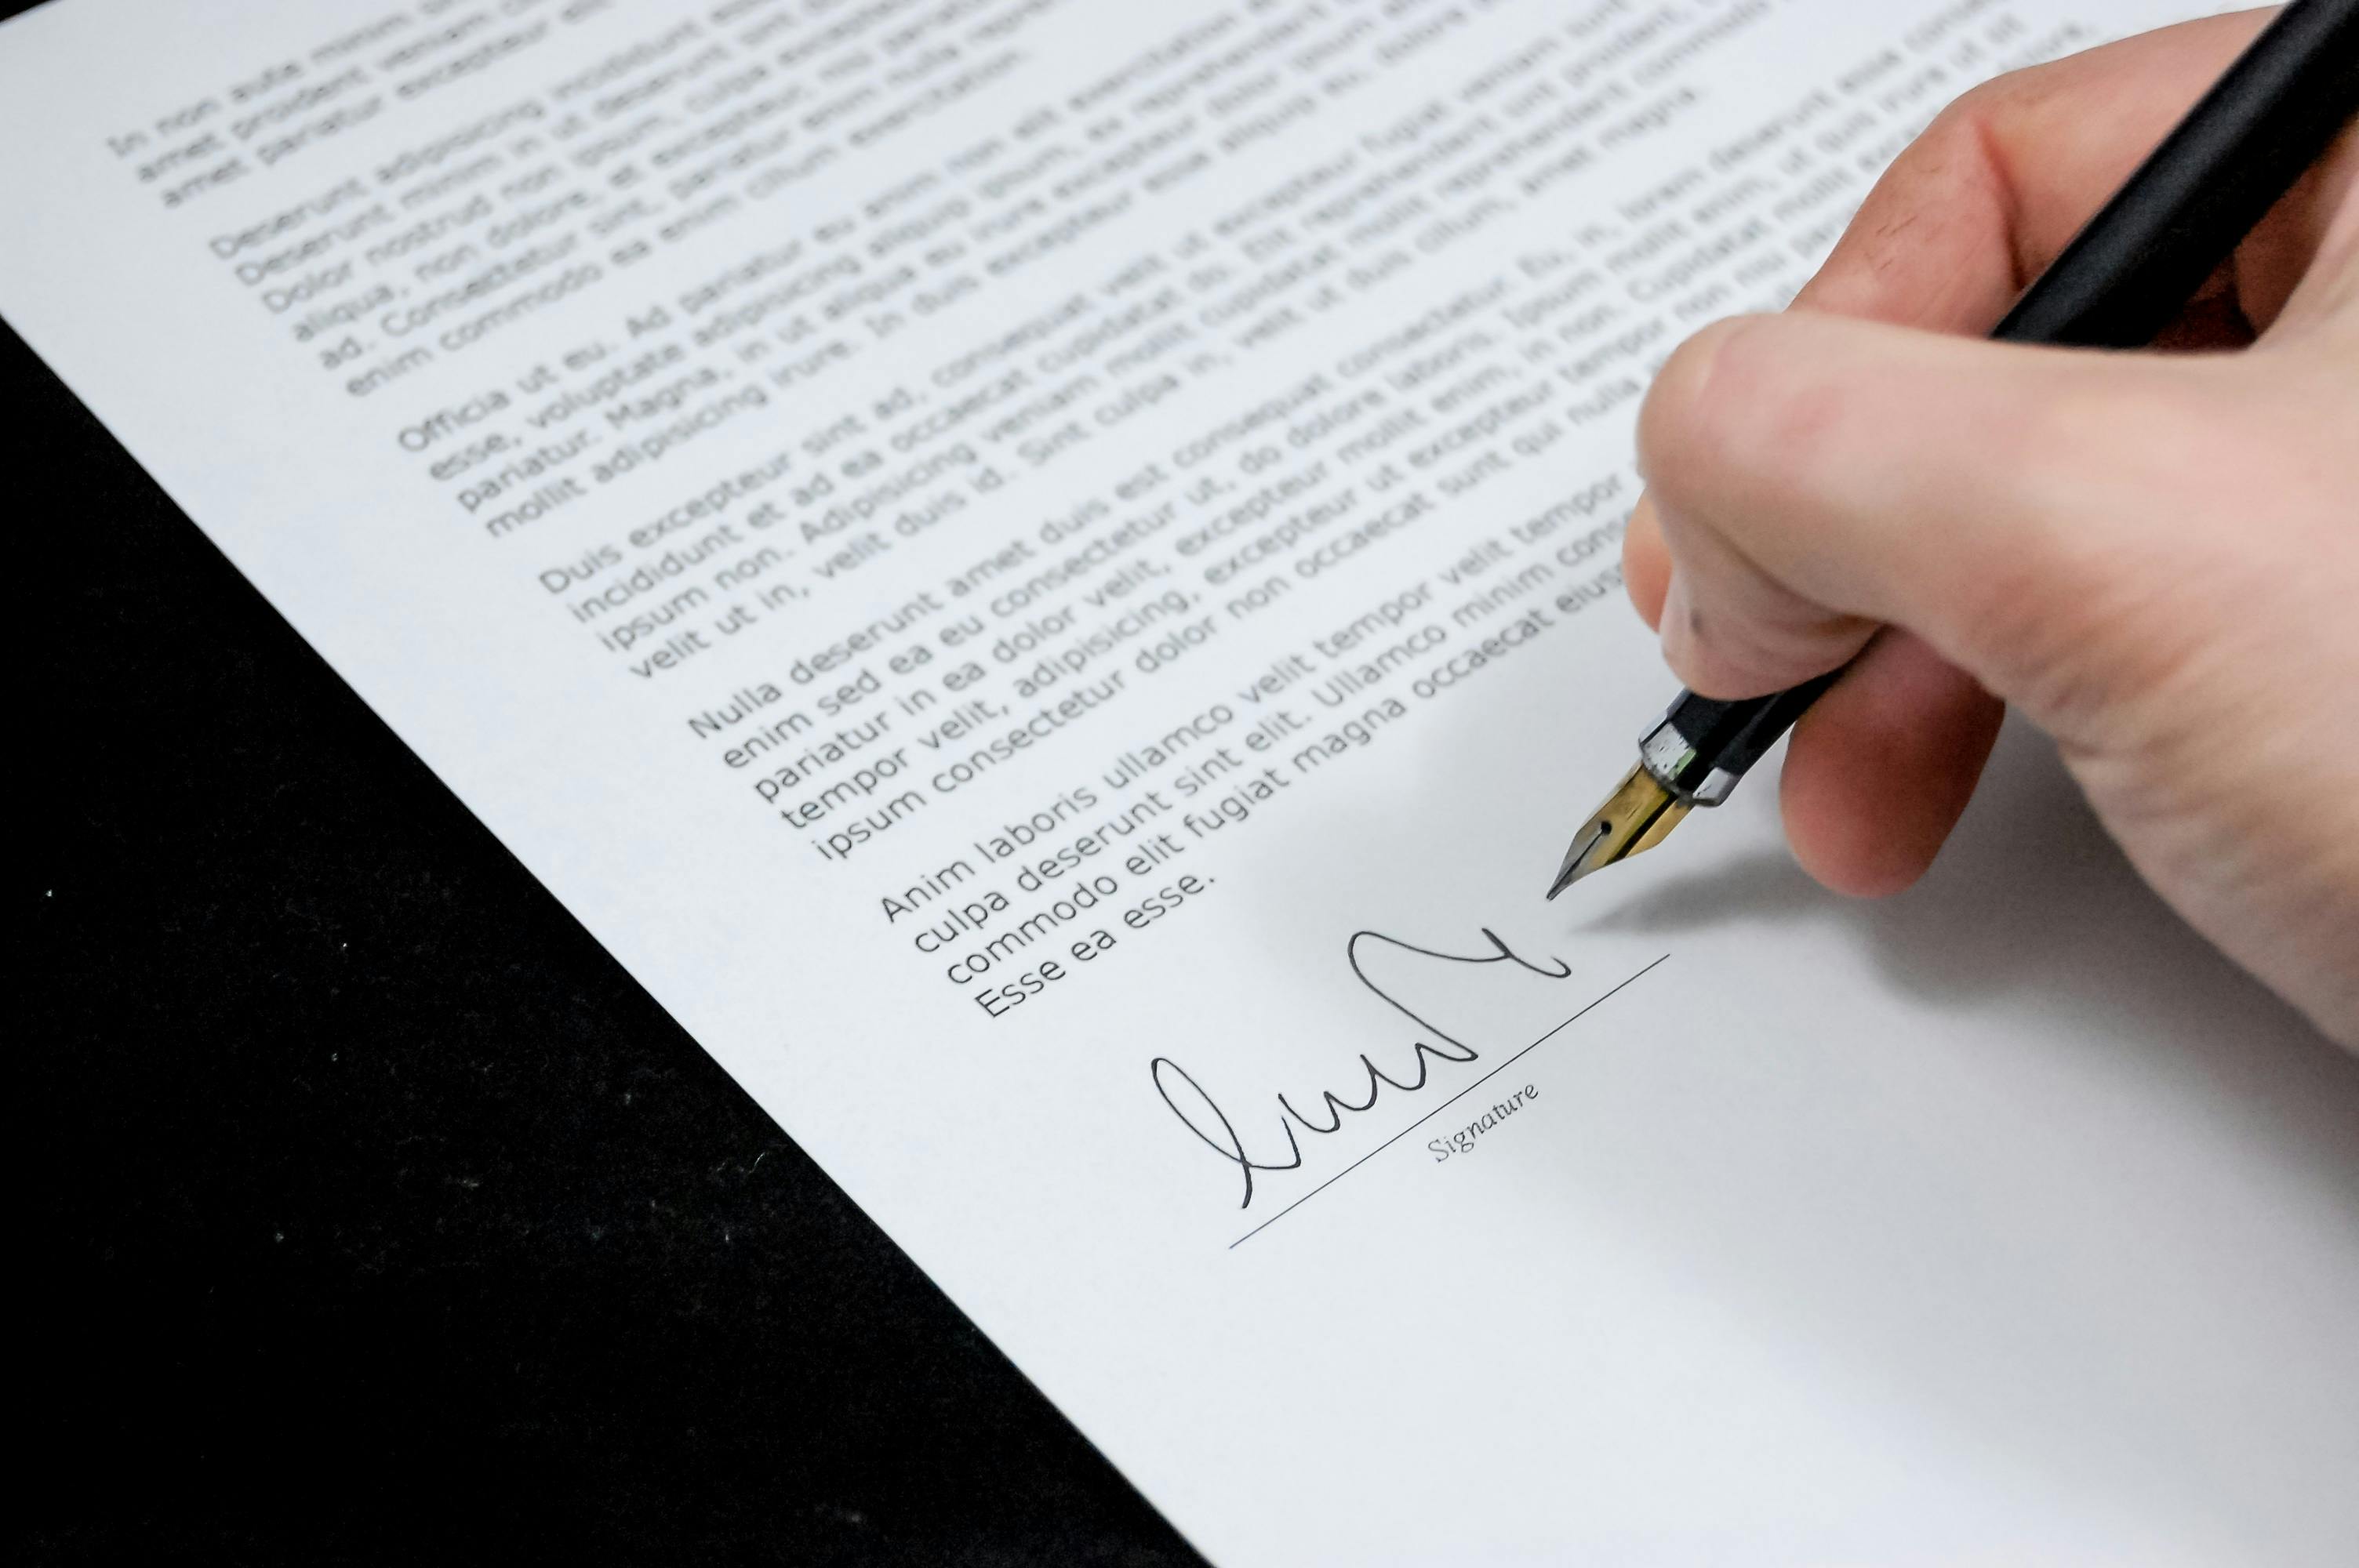 El acuerdo prenupcial siendo firmado | Fuente: Pexels